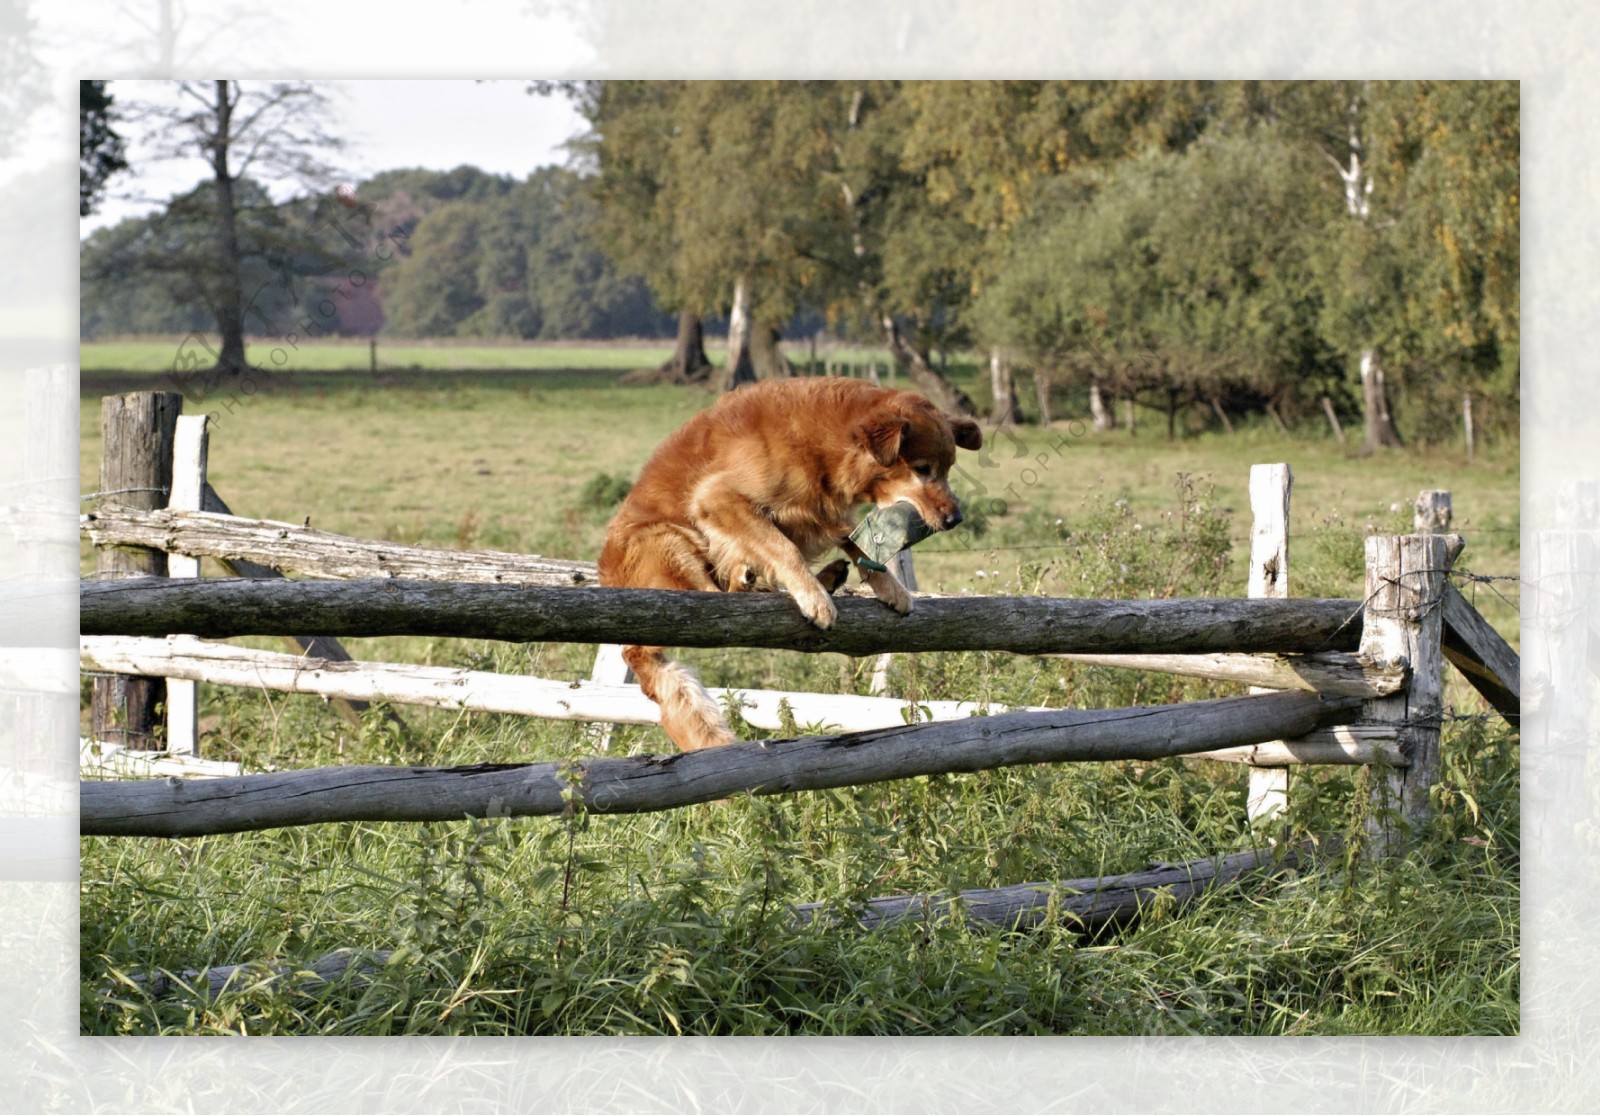 爬在木栏上的狗